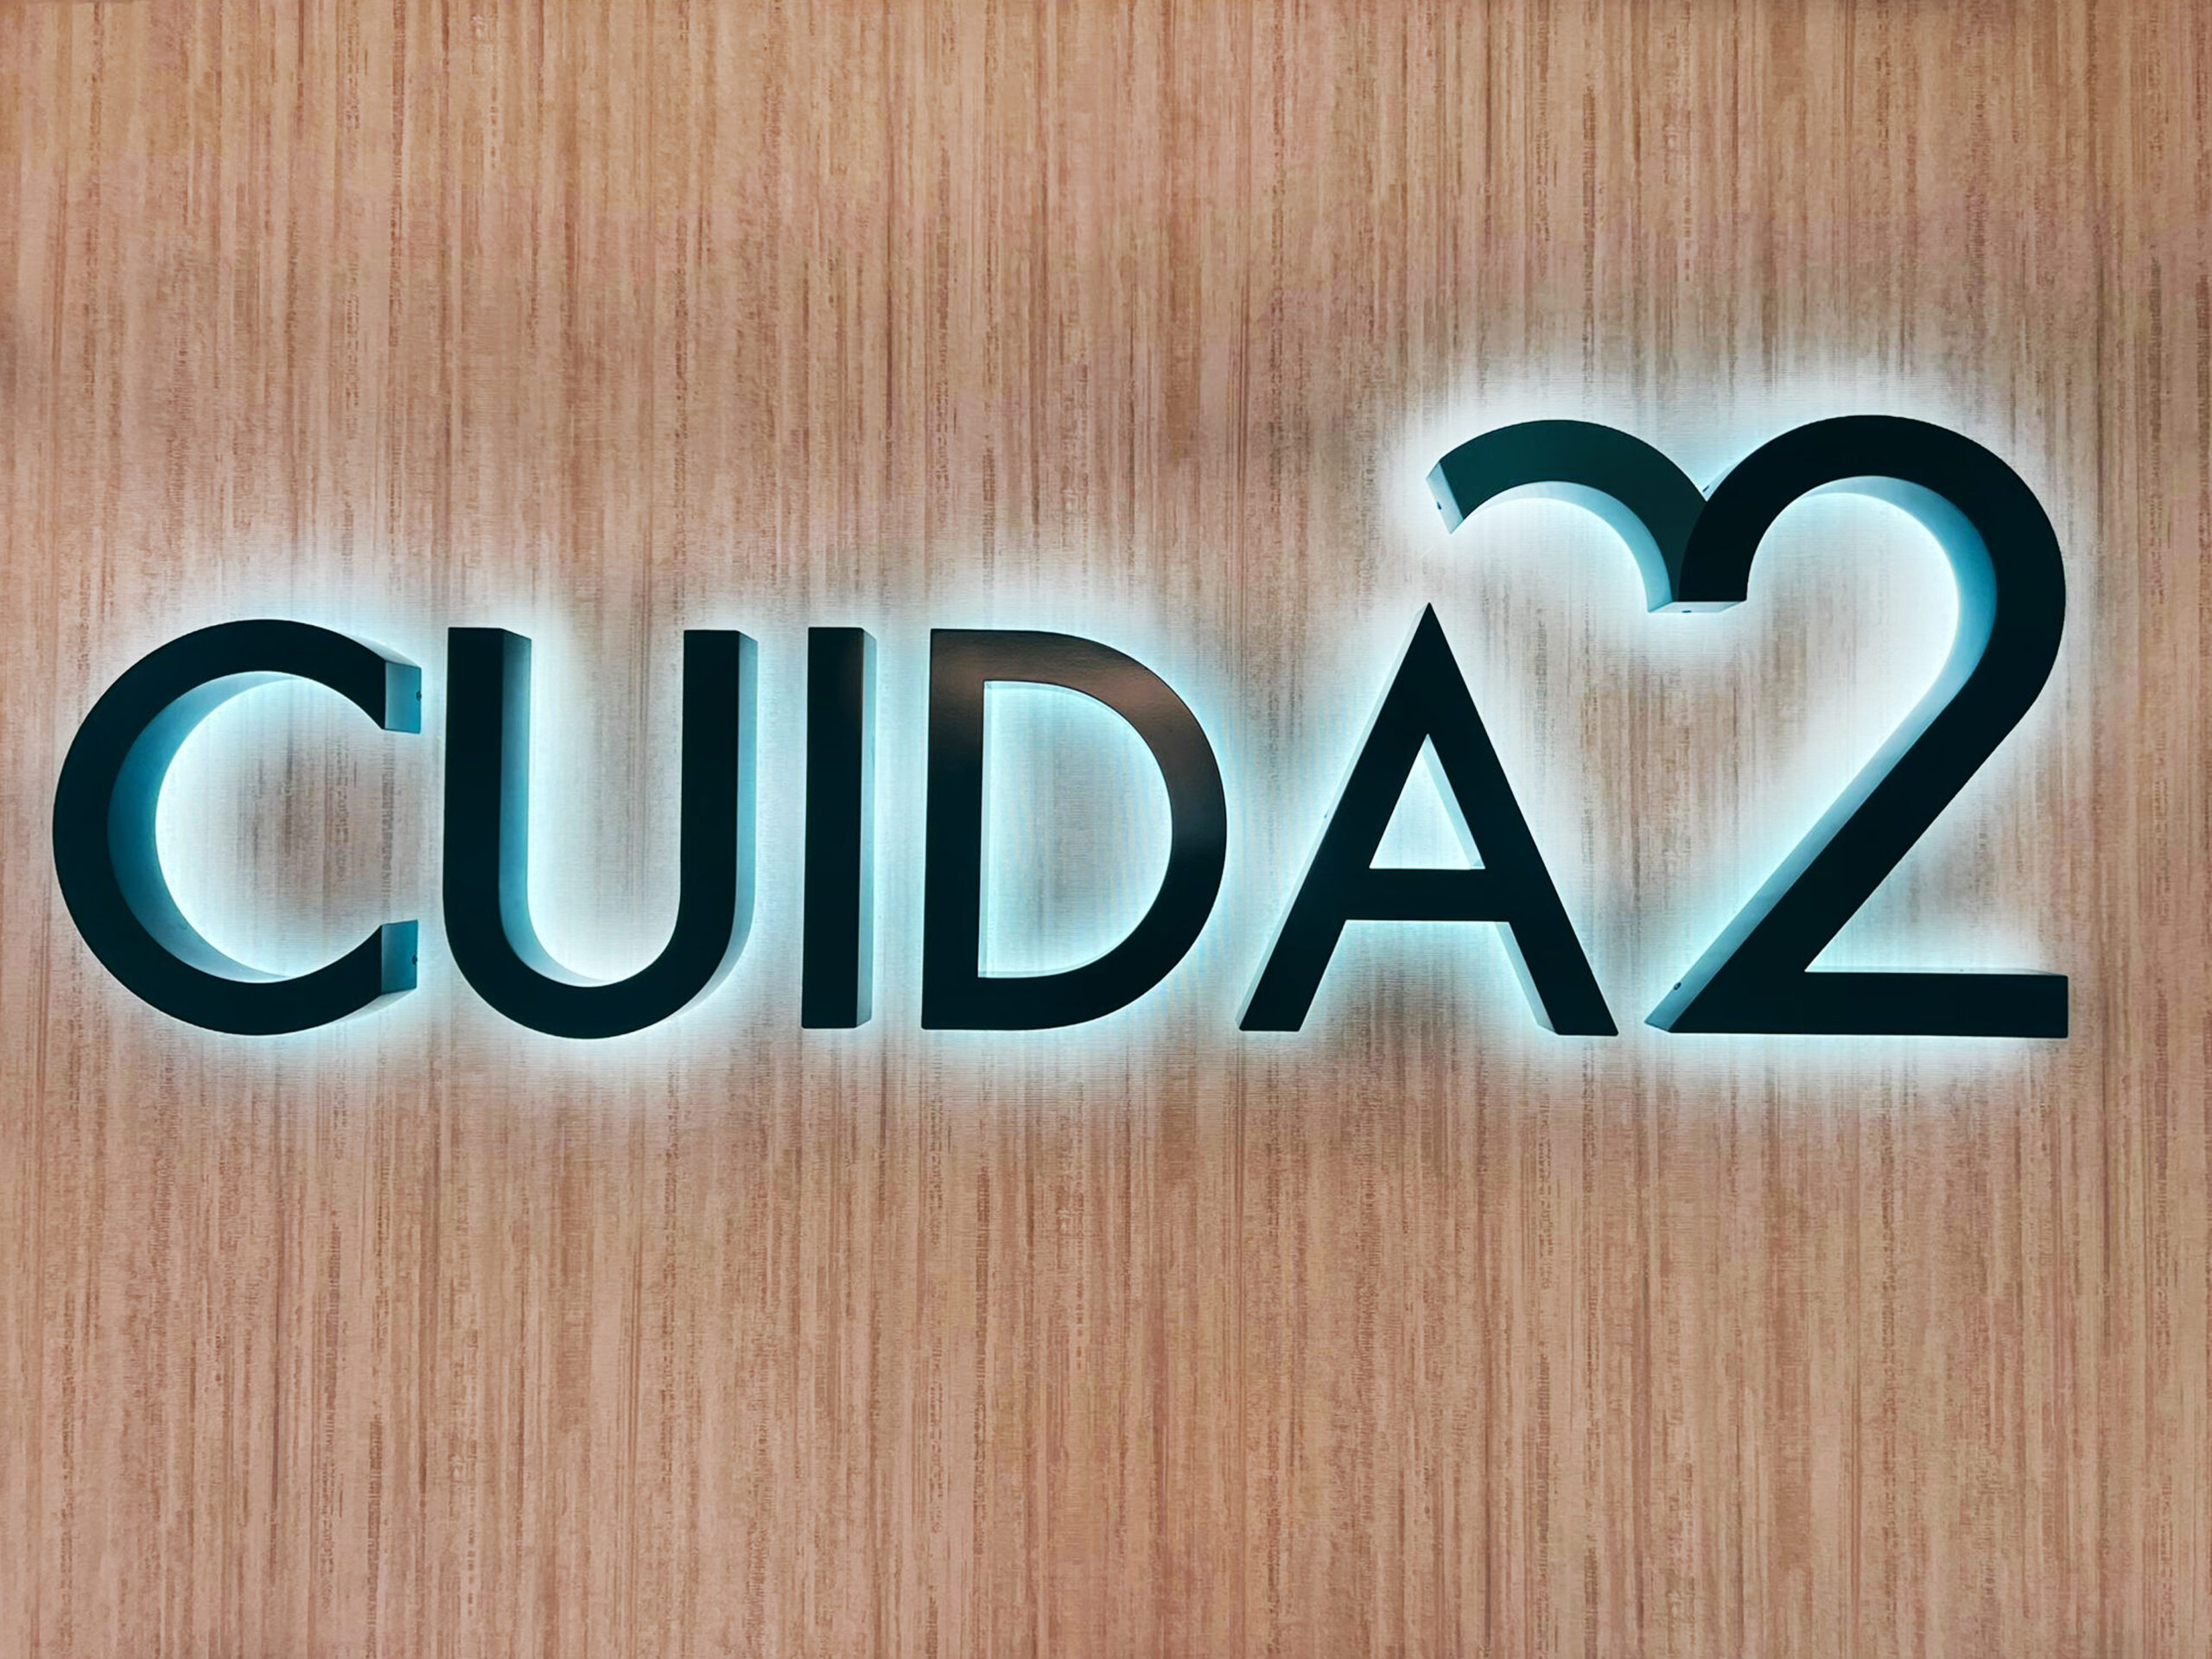 cuida2_reales__0007_2